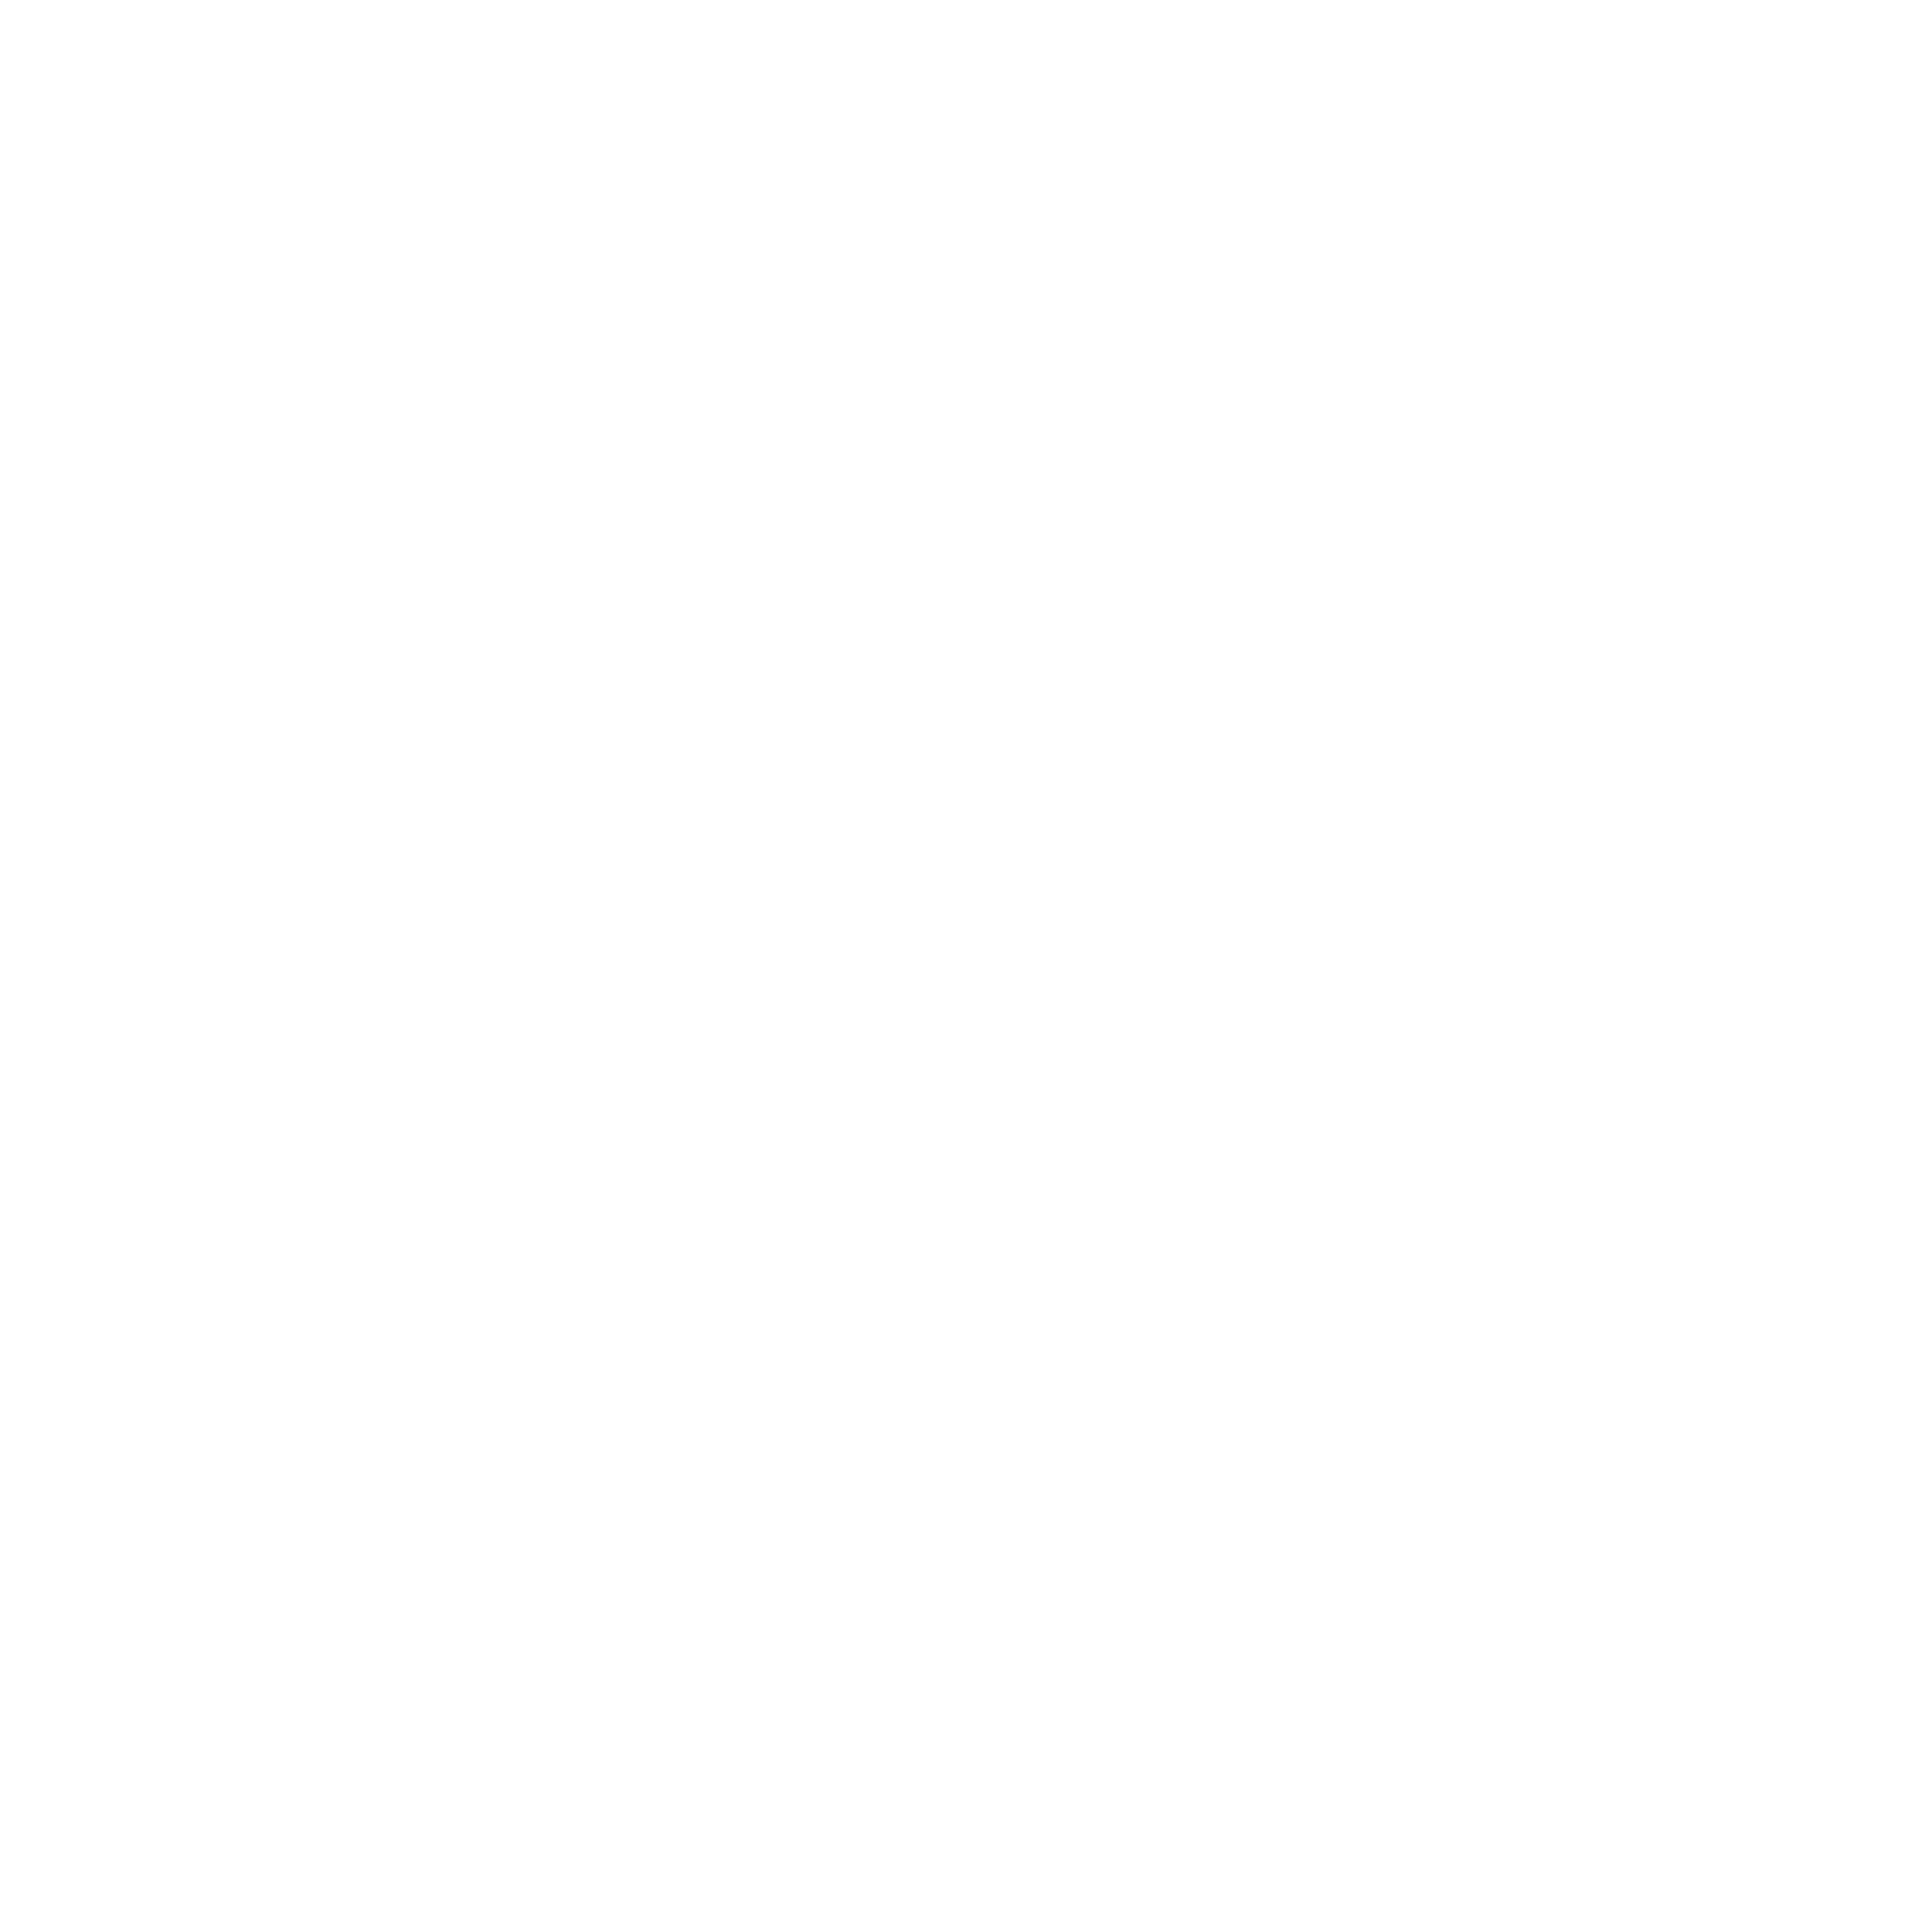 Danny Leftridge